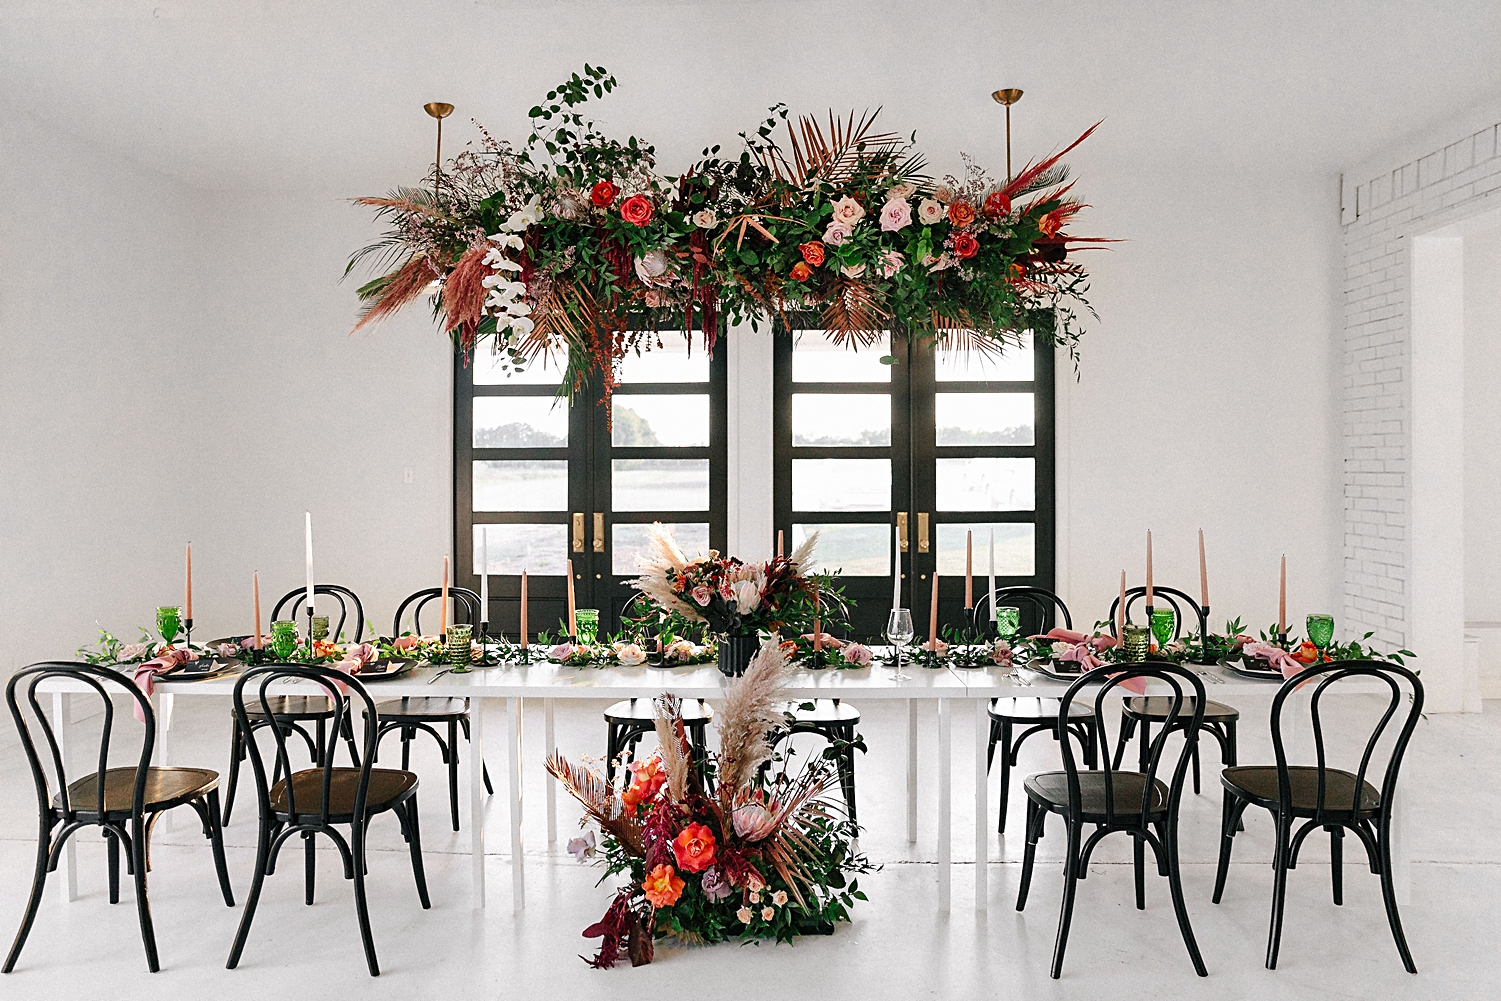 Emerson Venue wedding reception head table floral instillation